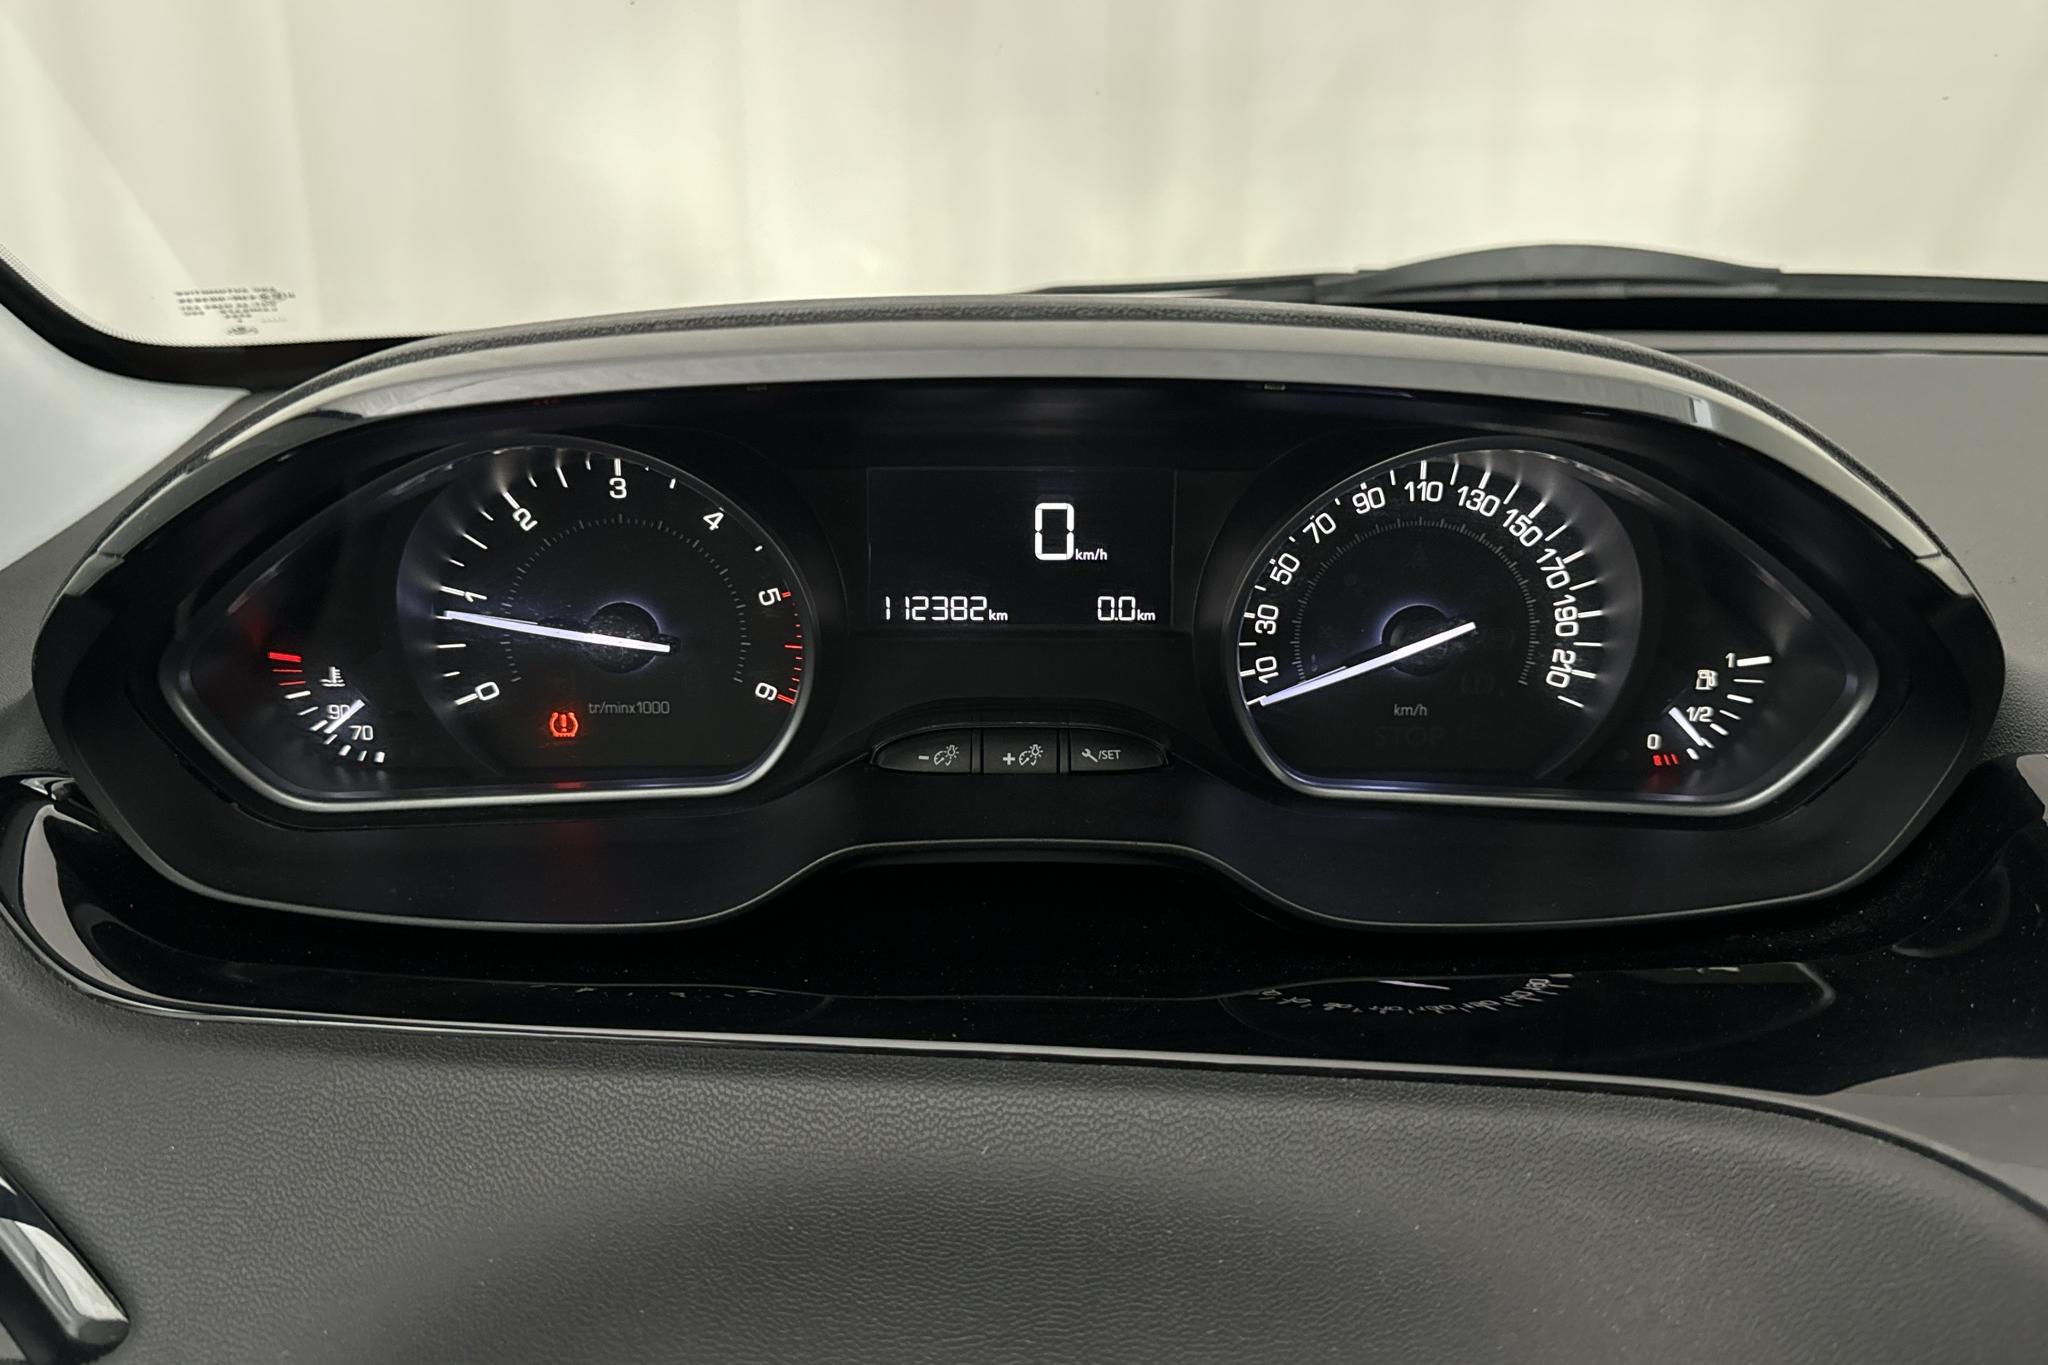 Peugeot 208 BlueHDi 5dr (100hk) - 112 390 km - Manual - 2016